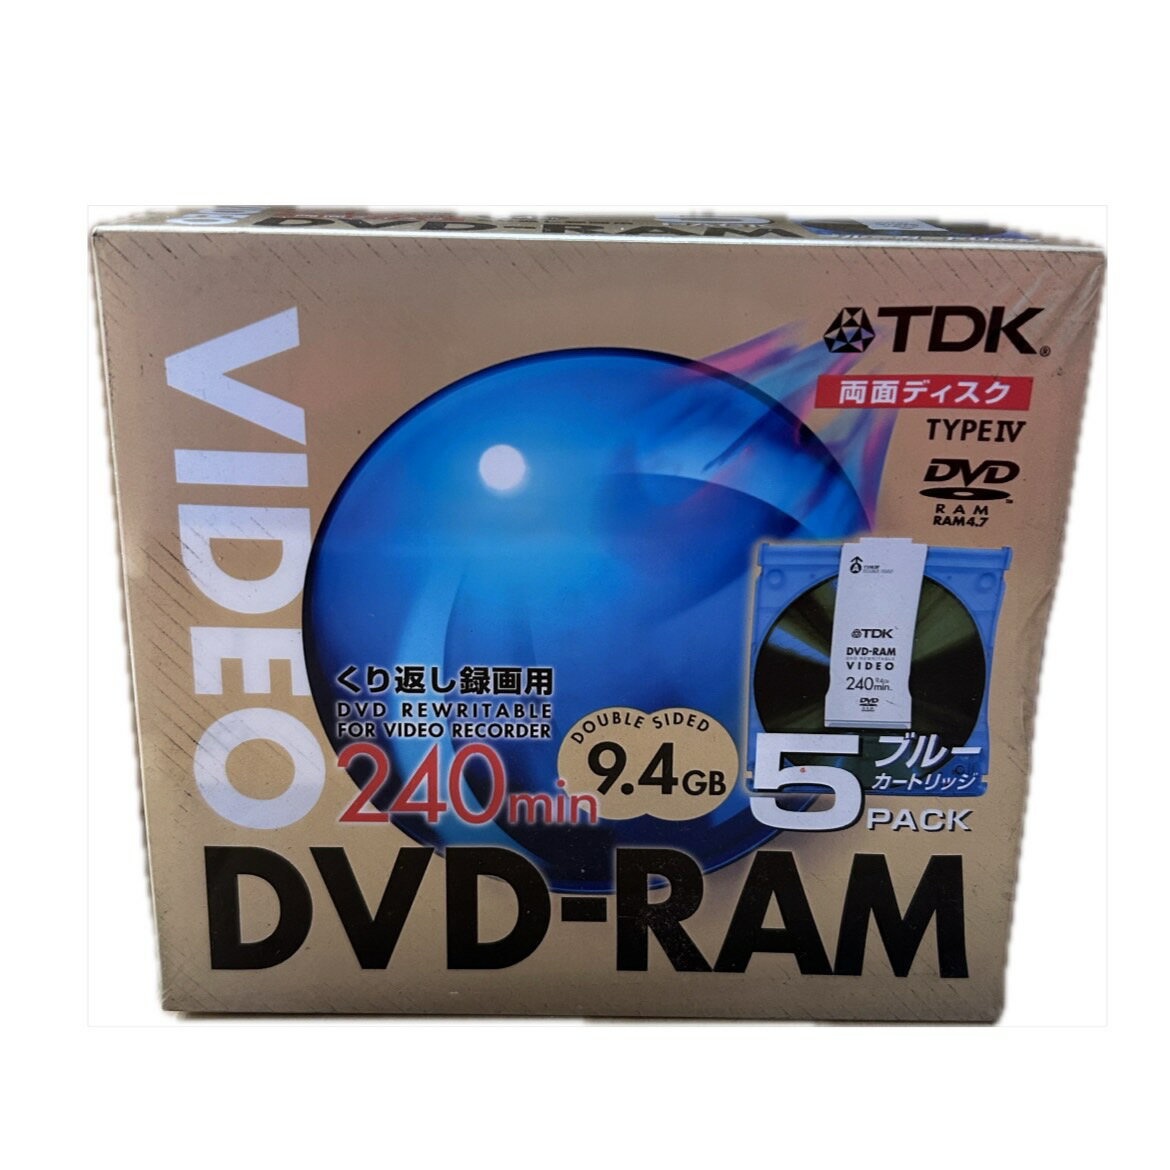 【終売】 訳あり【TDK】DVD-RAM 9.4GB くり返し録画用 240min 5枚入り 両面ディスク ブルーカートリッジ